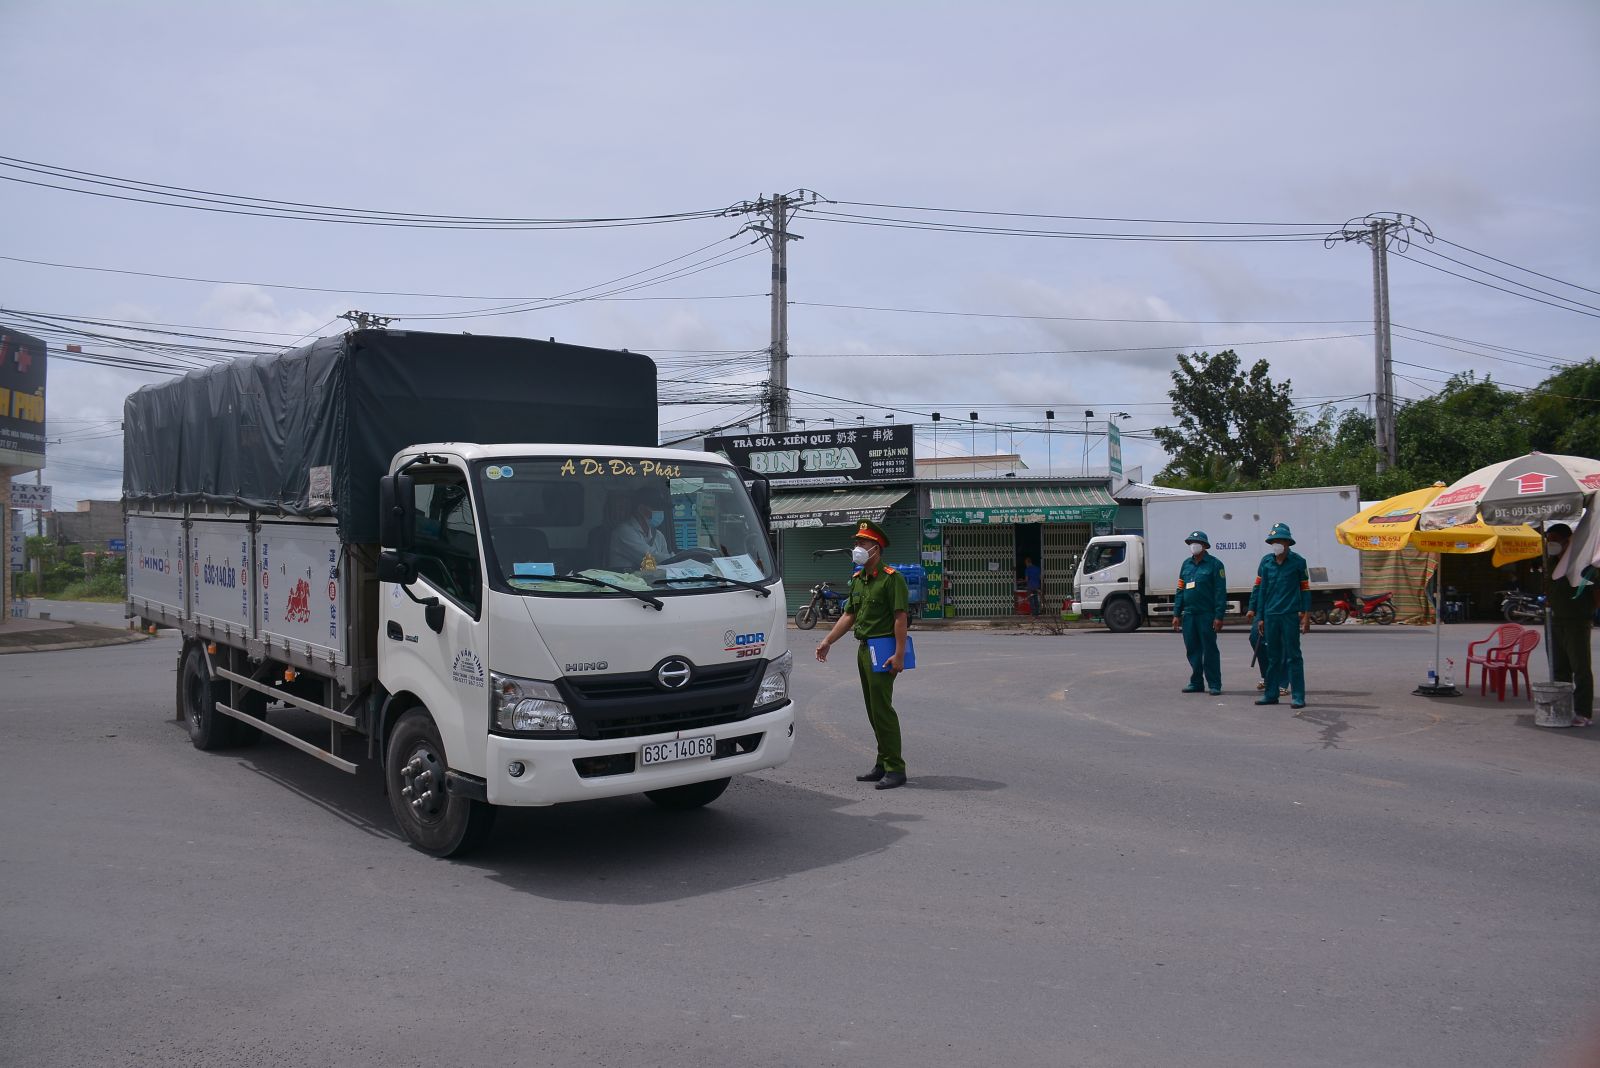 Các địa phương thực hiện Chỉ thị 16 vẫn duy trì nghiêm việc kiểm soát người và phương tiện lưu thông nhằm bảo đảm công tác phòng, chống dịch